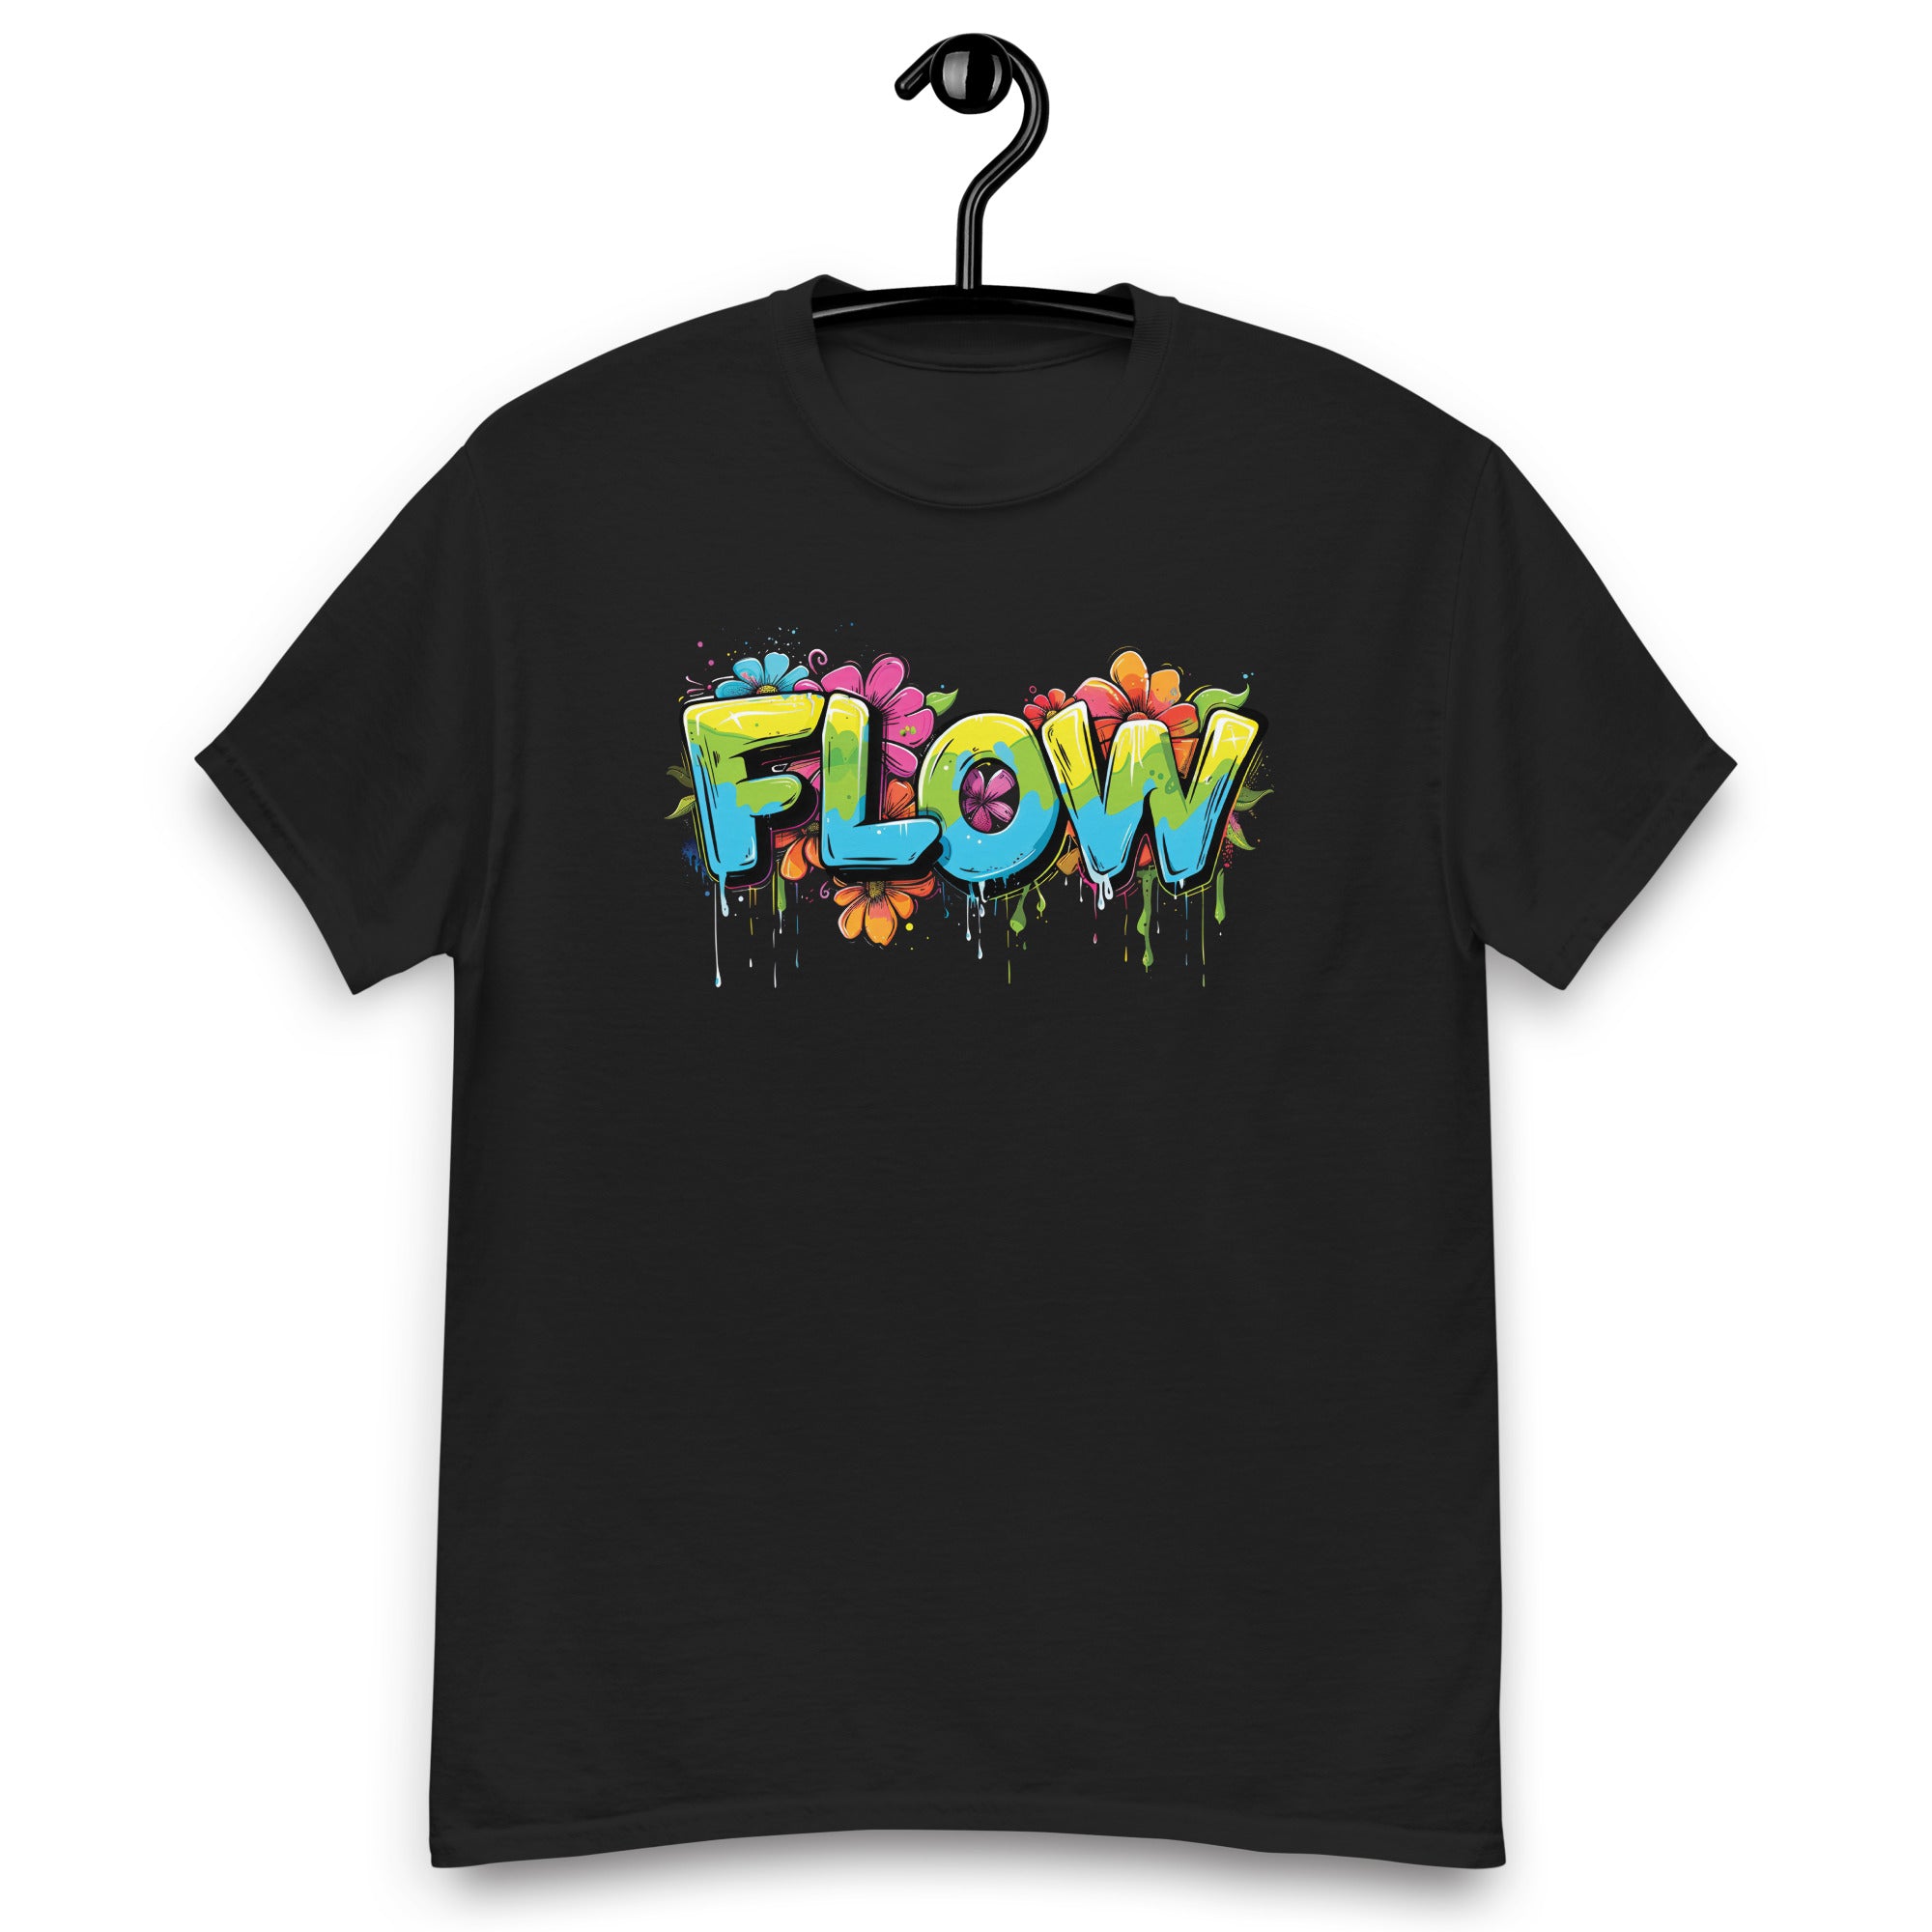 Flower Flow Tee